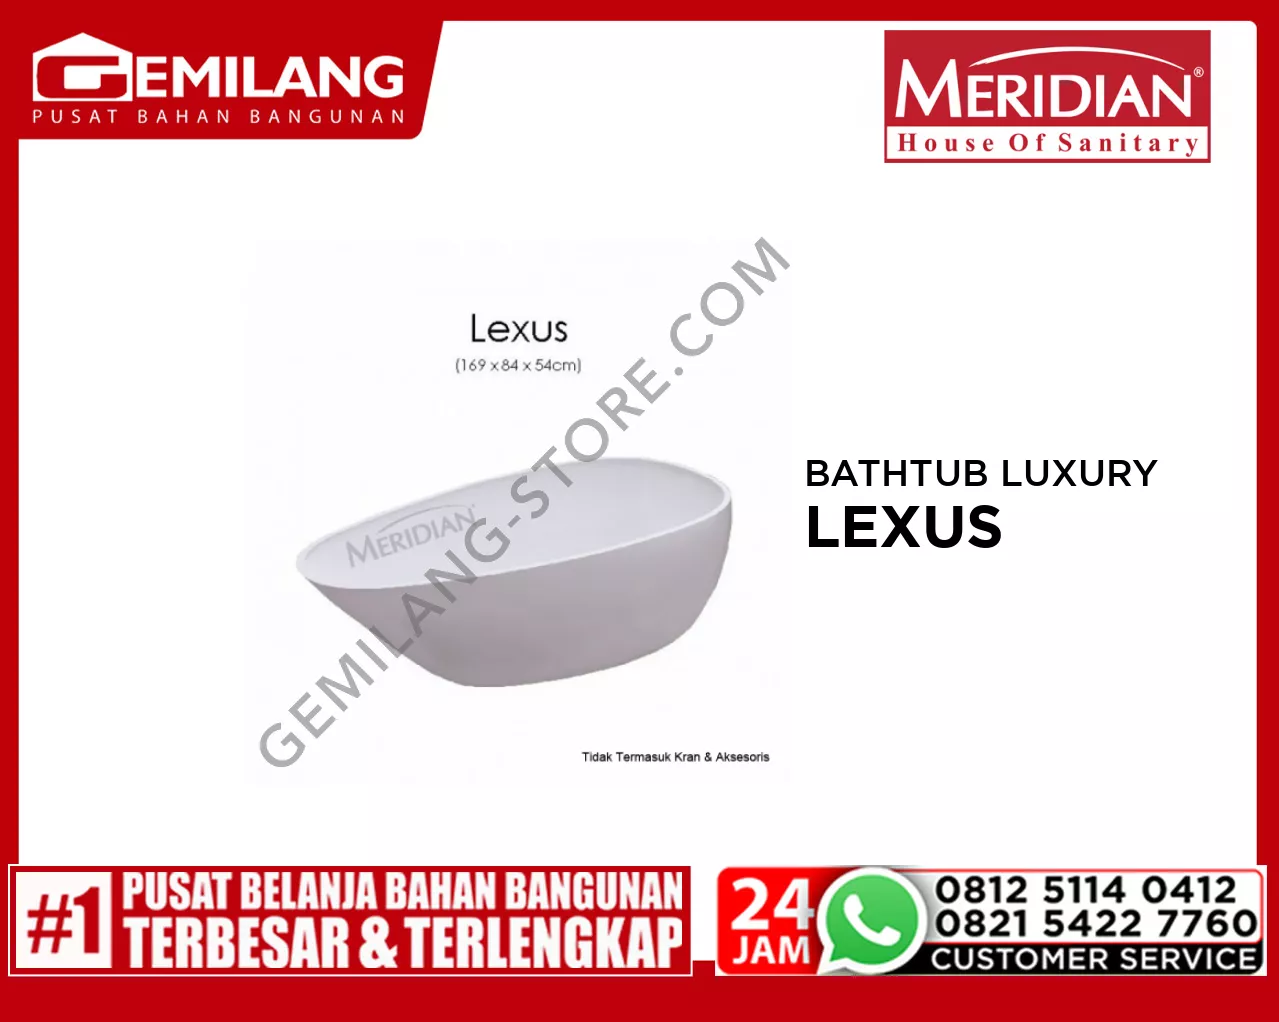 MERIDIAN BATHTUB LUXURY LEXUS